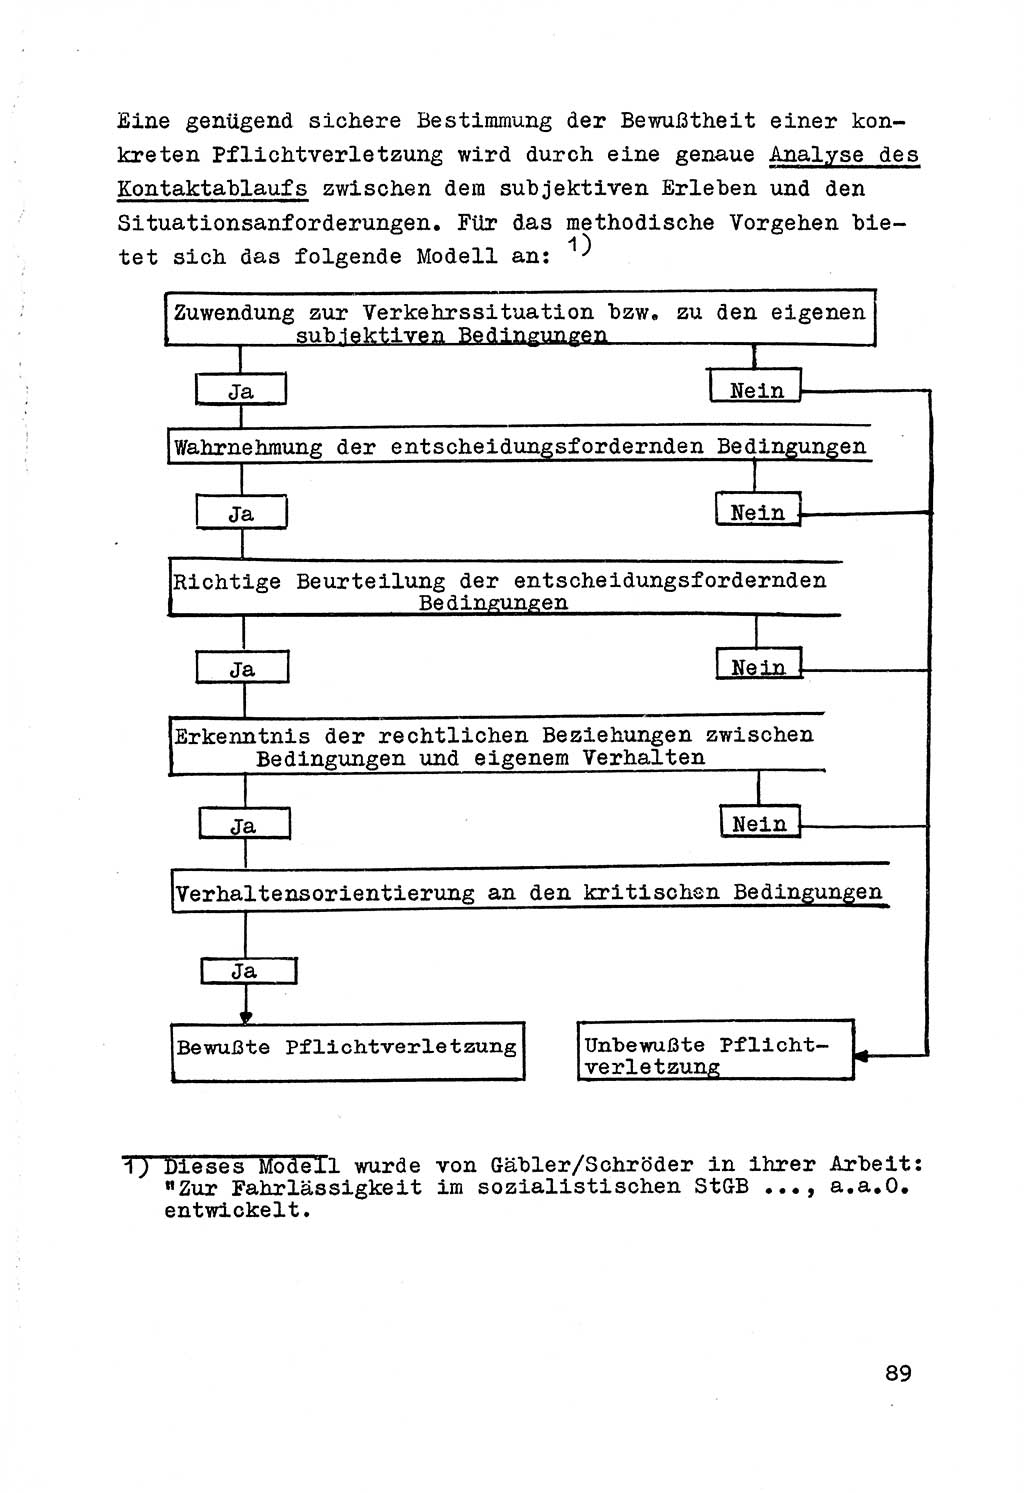 Strafrecht der DDR (Deutsche Demokratische Republik), Besonderer Teil, Lehrmaterial, Heft 7 1970, Seite 89 (Strafr. DDR BT Lehrmat. H. 7 1970, S. 89)